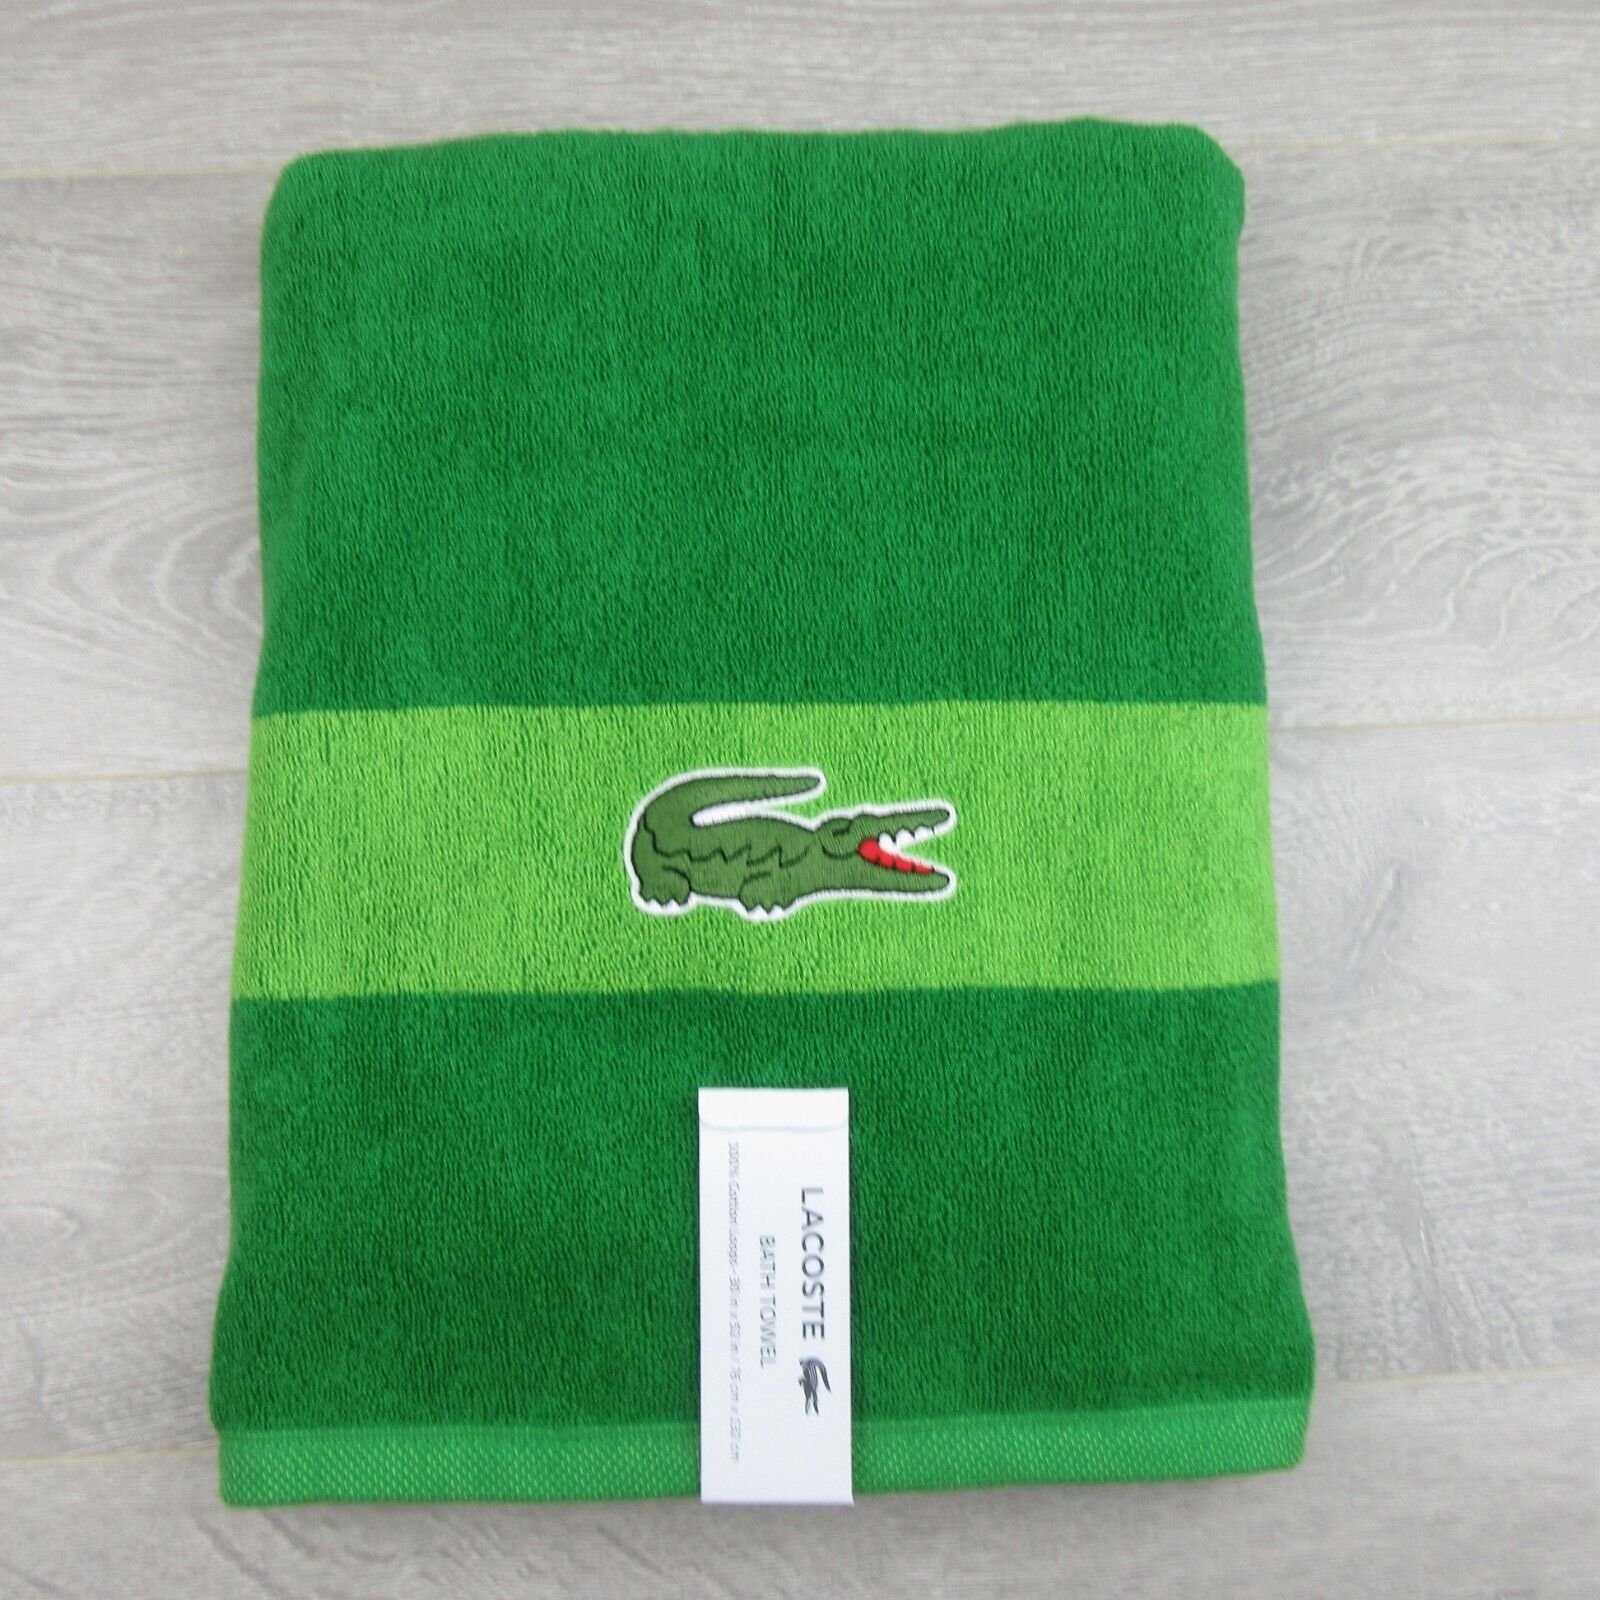 (SET OF 4) Lacoste Logo Bath Towel 100% Cotton 30x52 Teal